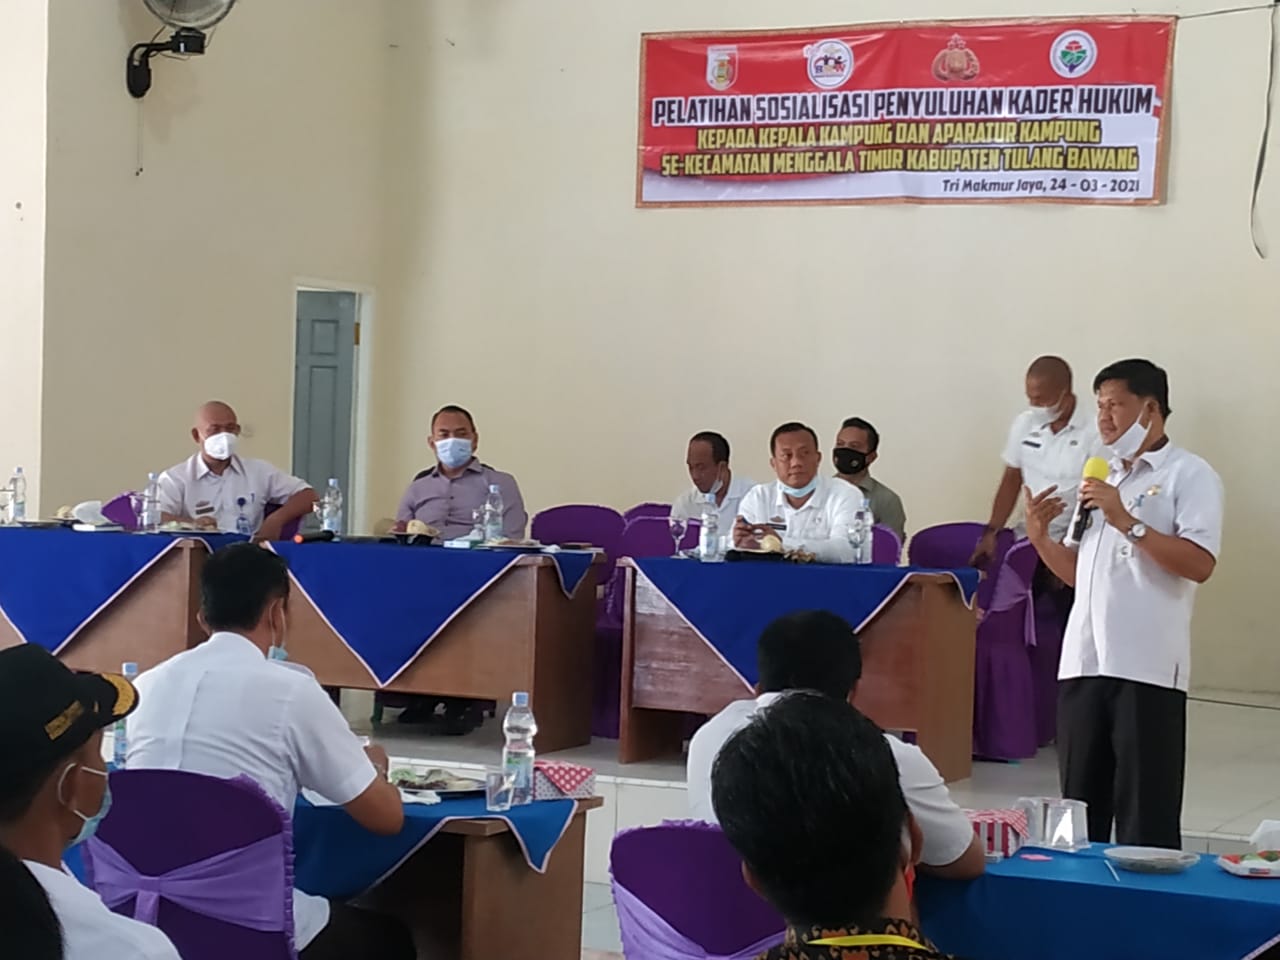 Pelatihan dan Sosialisasi Penyuluhan Kader Hukum Kepada Aparatur Kampung Se-Kecamatan Menggala Timur Dilaksana